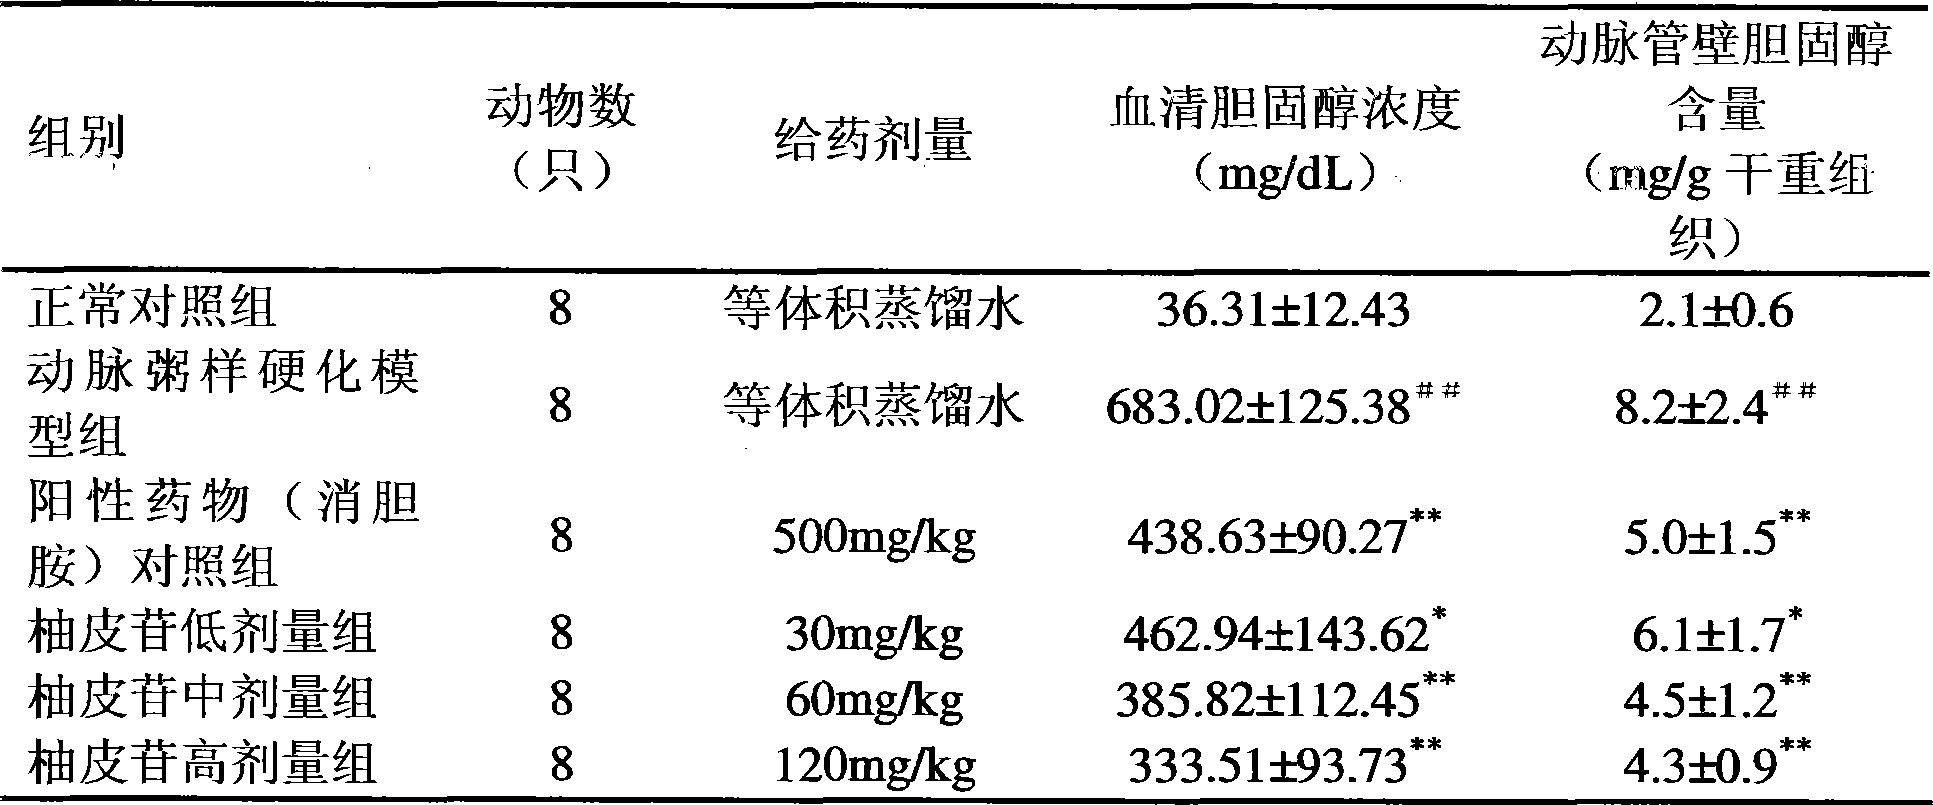 Use of naringin in preparing antiatherosclerotic medicine